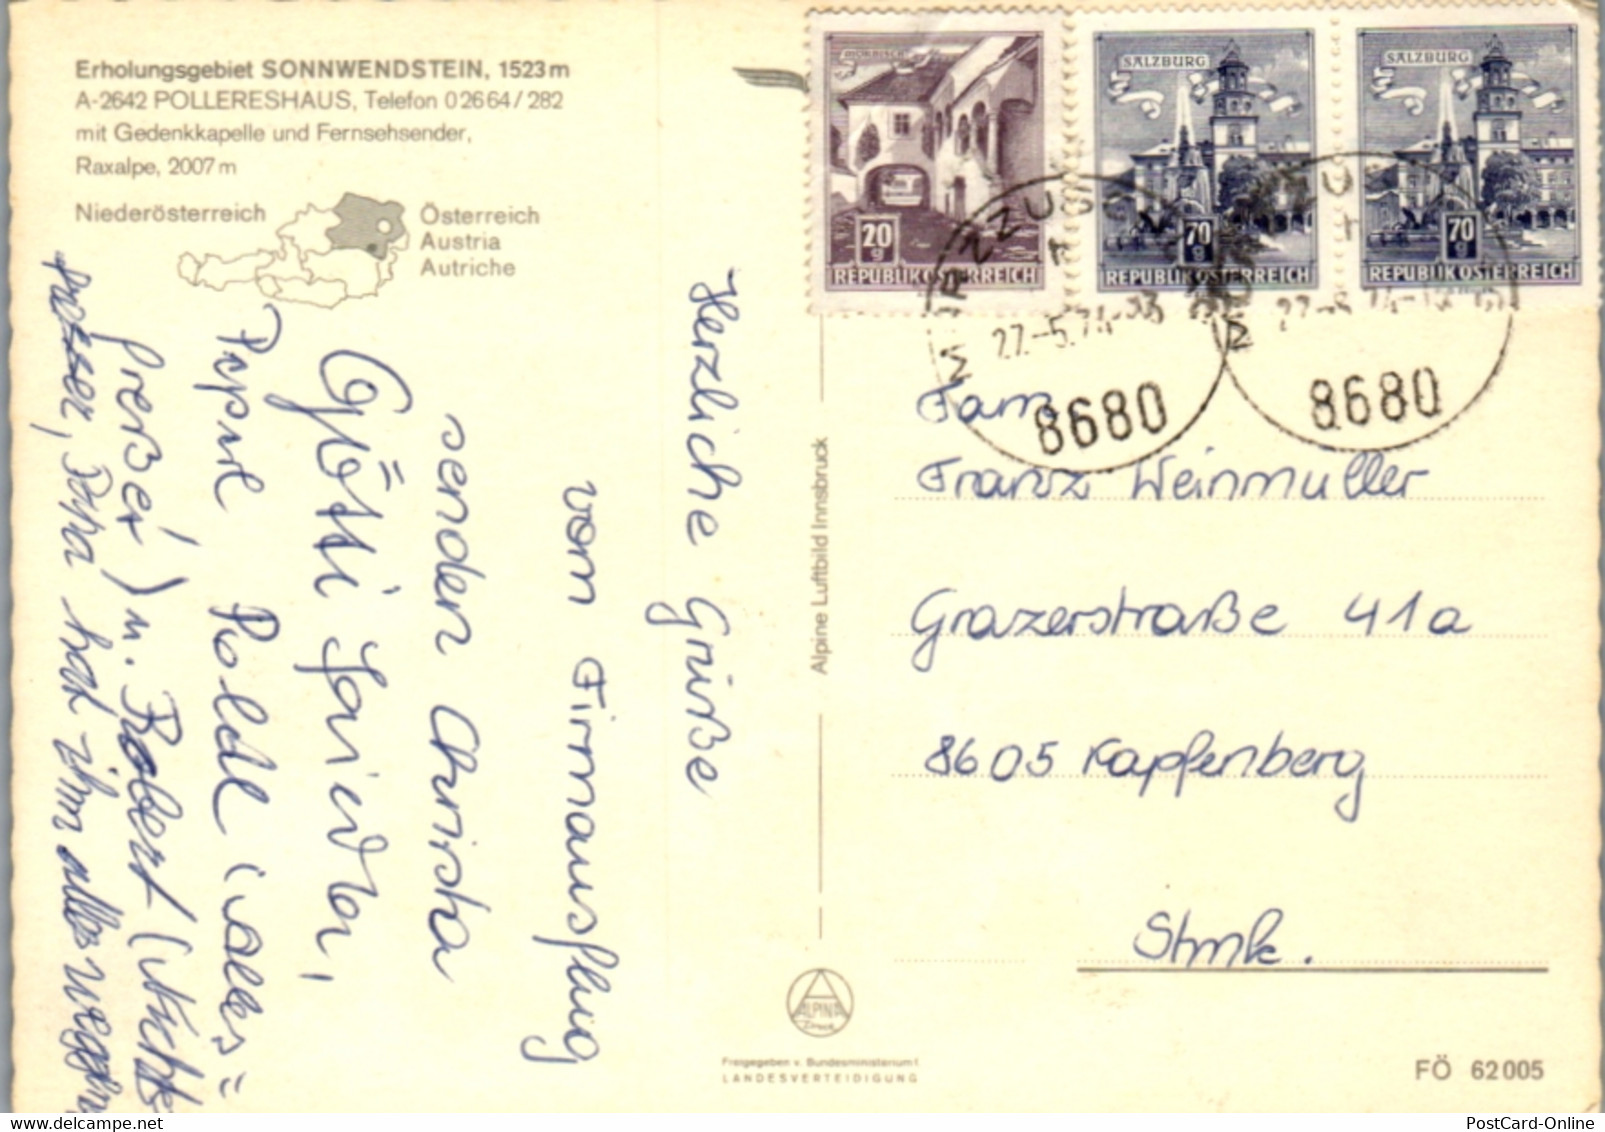 5800 - Niederösterreich - Pollereshaus , Sonnwendstein , Raxalpe , Fernsehsender - Gelaufen 1974 - Schneeberggebiet